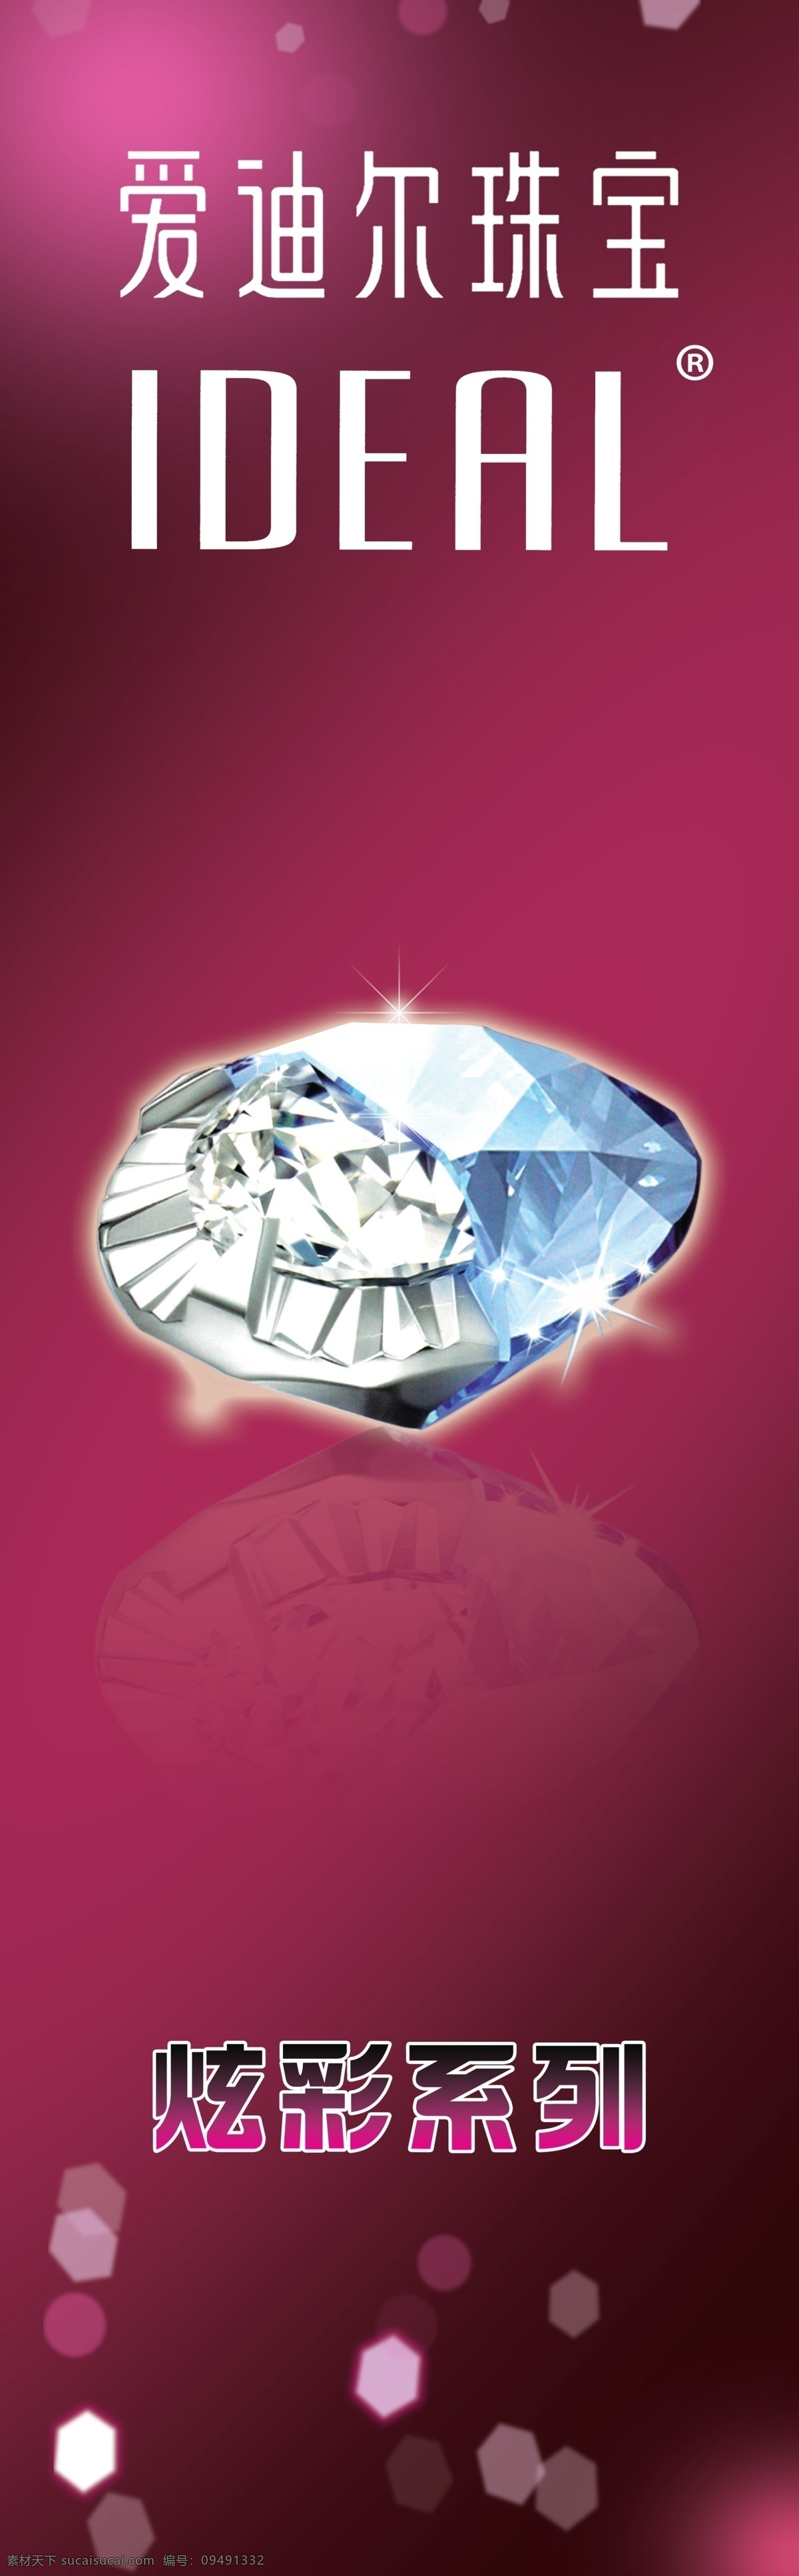 炫彩系列 爱迪尔珠宝 爱迪尔标志 珠宝钻石 广告设计模板 源文件